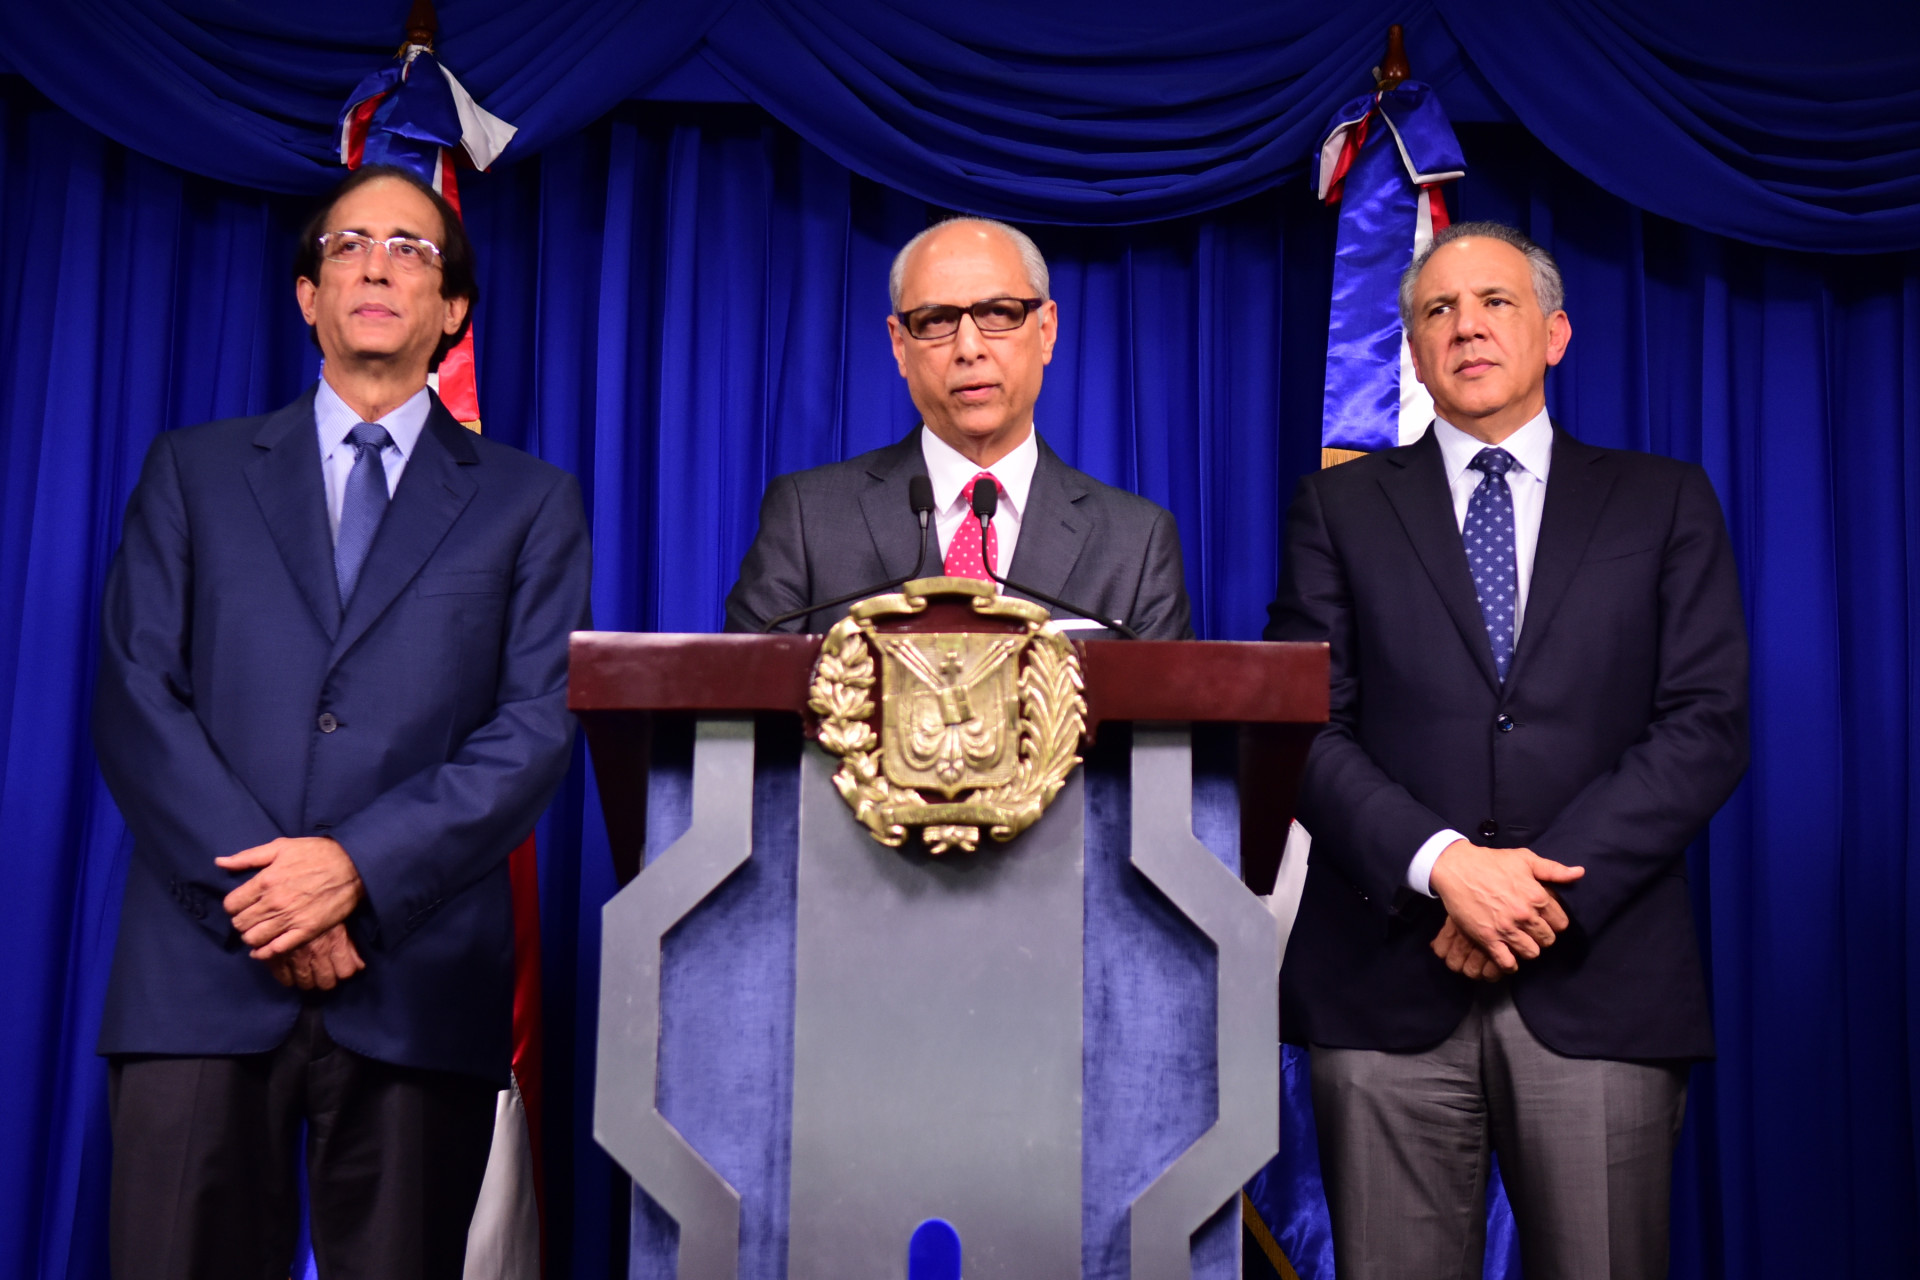 REPÚBLICA DOMINICANA: Posición del Gobierno dominicano sobre los reclamos de explicación ante suspensión de las elecciones municipales